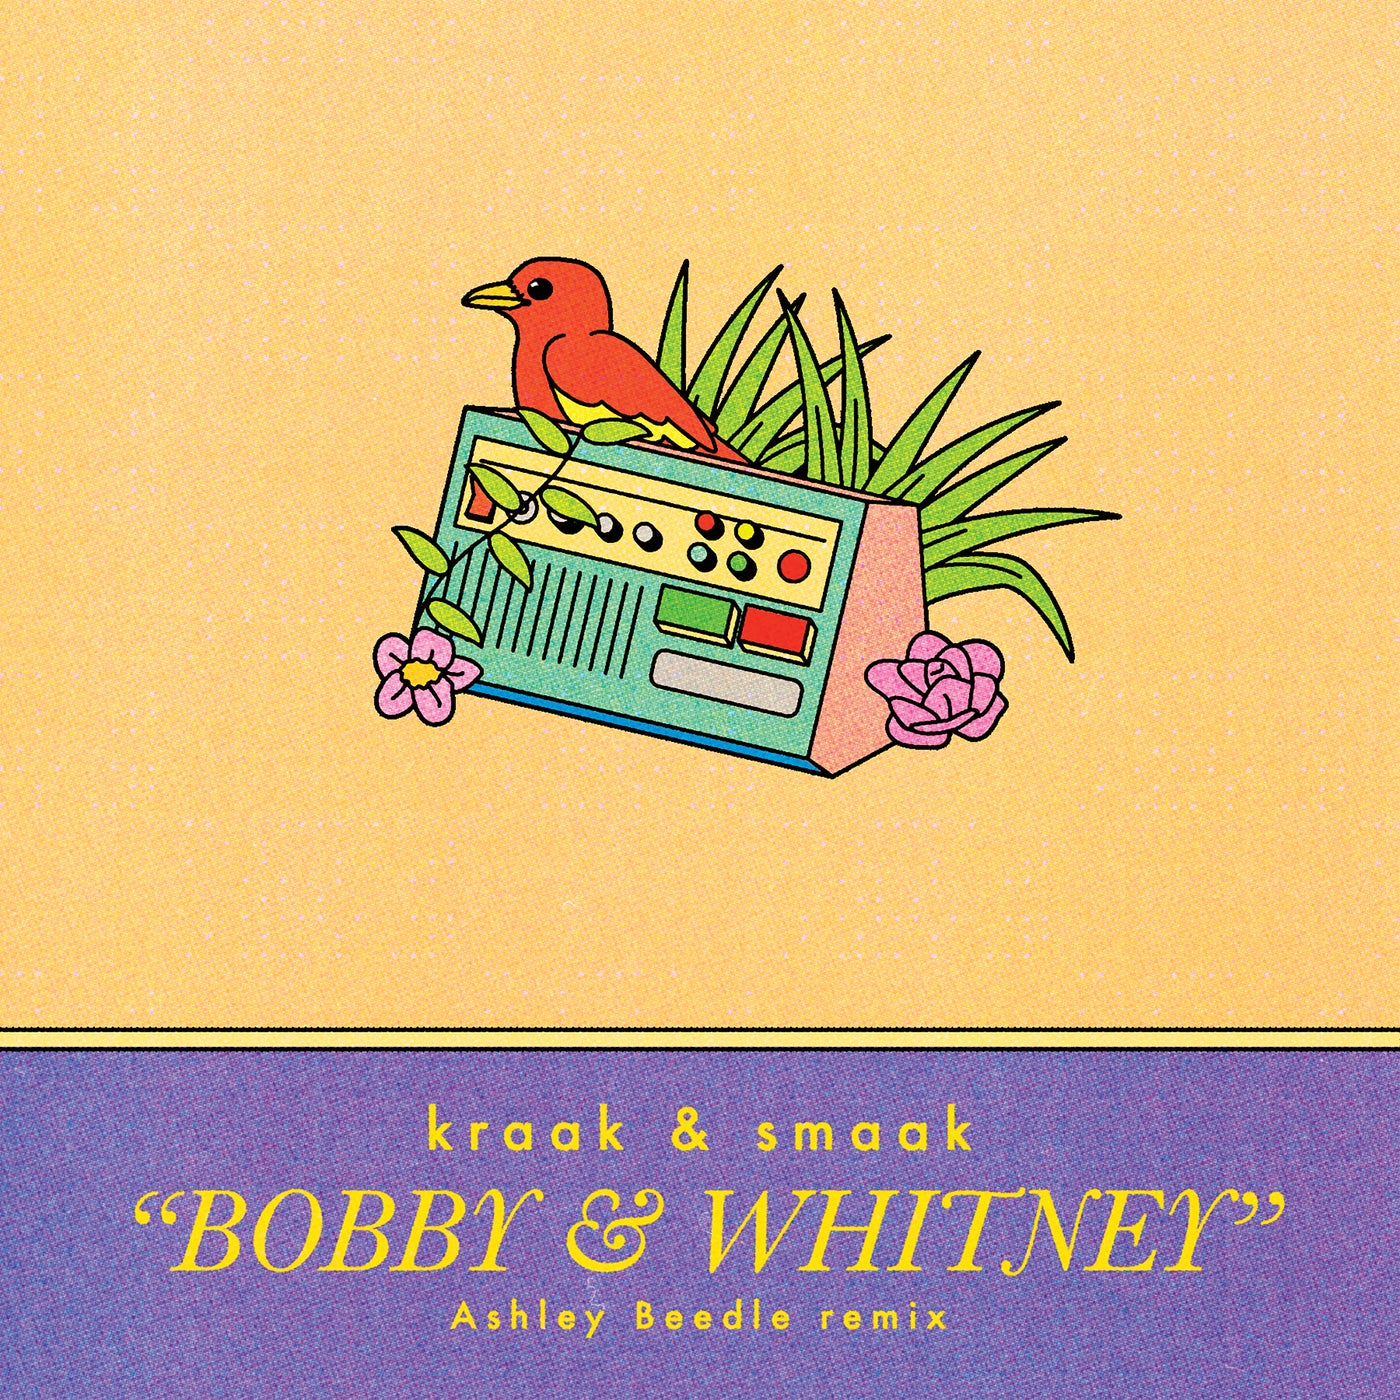 Bobby & Whitney (Ashley Beedle Remixes)